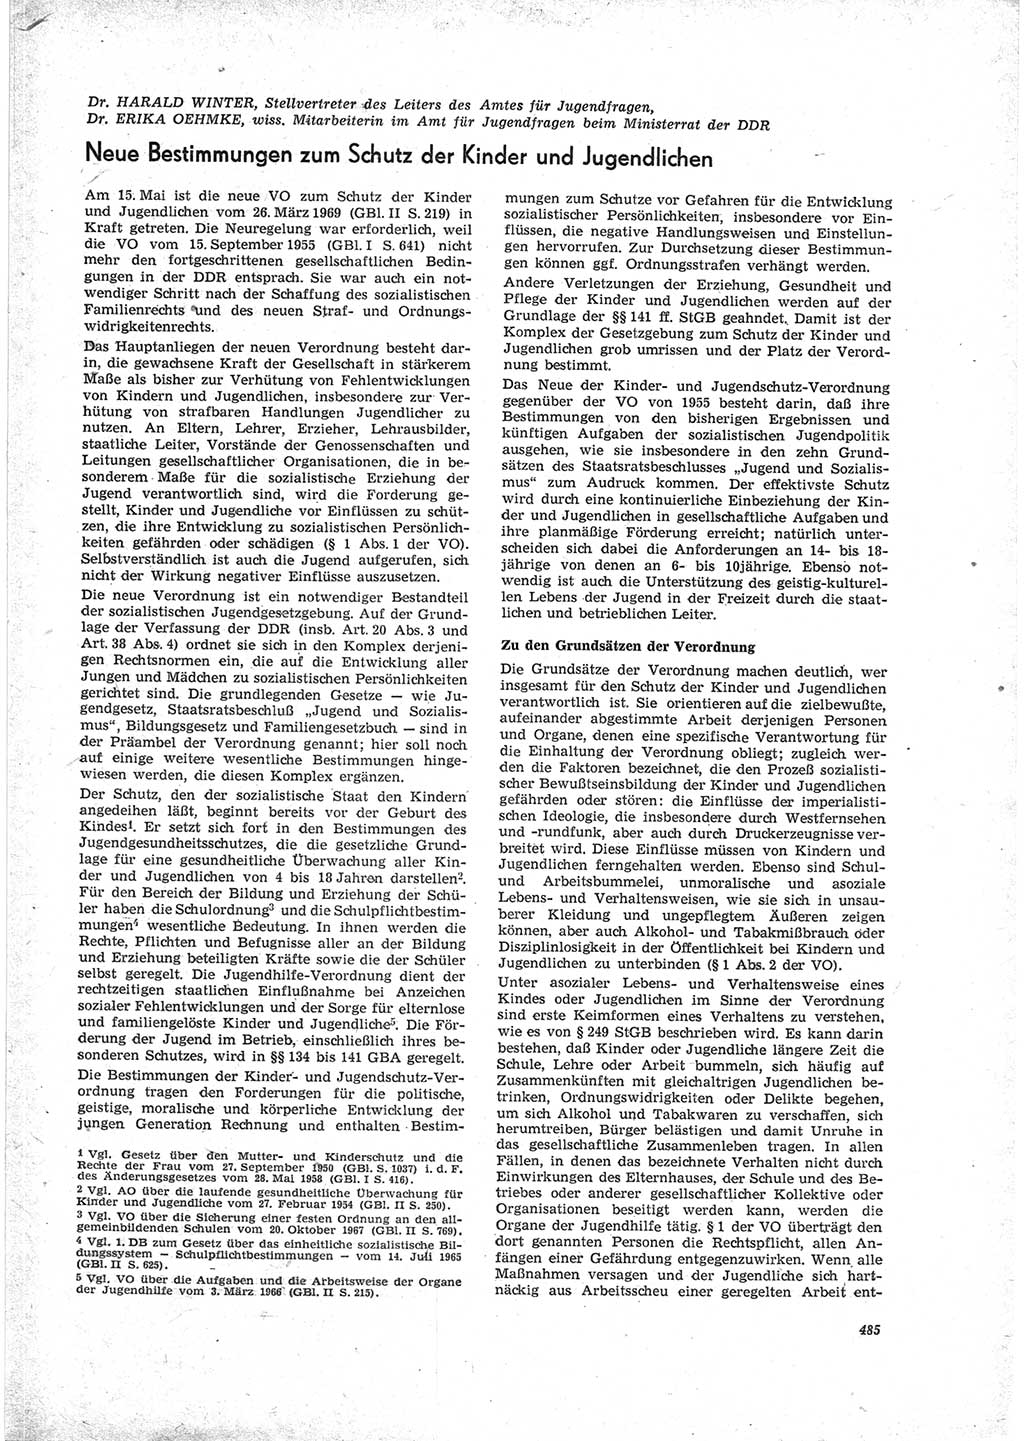 Neue Justiz (NJ), Zeitschrift für Recht und Rechtswissenschaft [Deutsche Demokratische Republik (DDR)], 23. Jahrgang 1969, Seite 485 (NJ DDR 1969, S. 485)